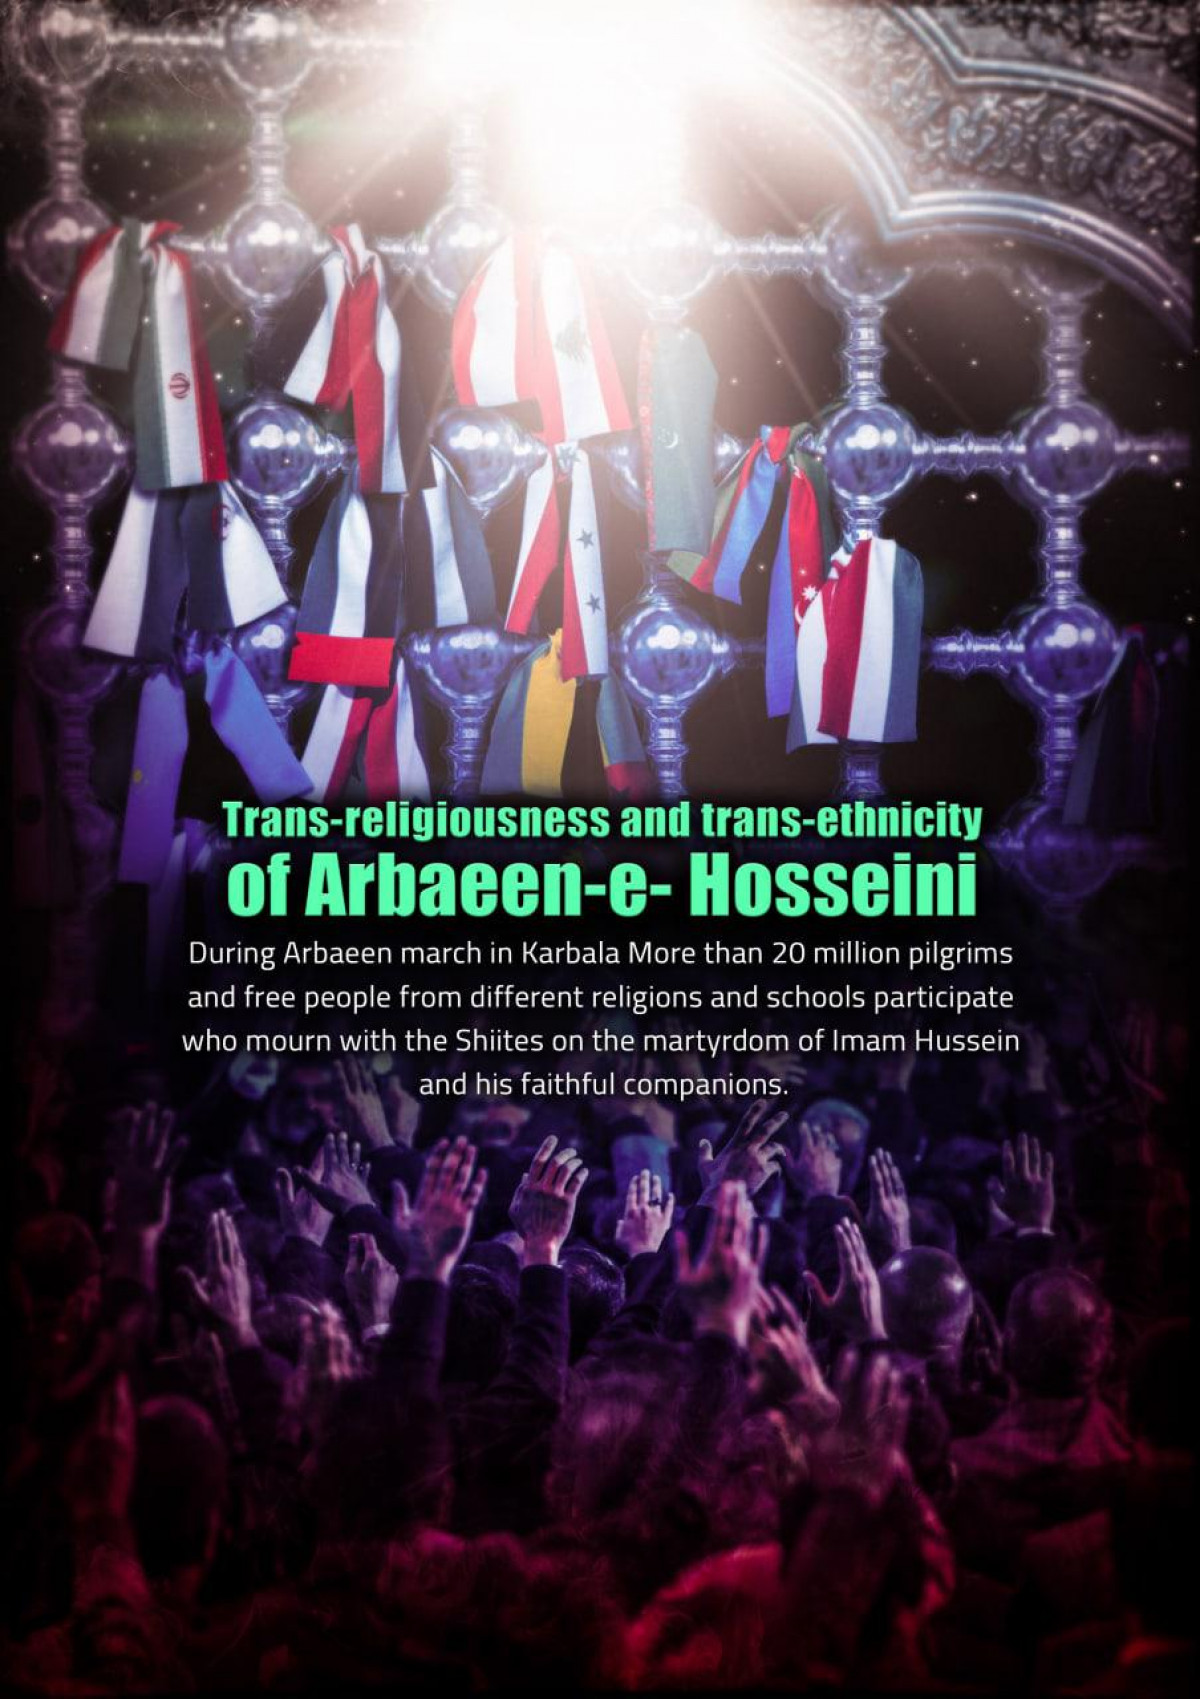 Trans-religiousness and trans-ethnicity of Arbaeen-e-Hosseini 1